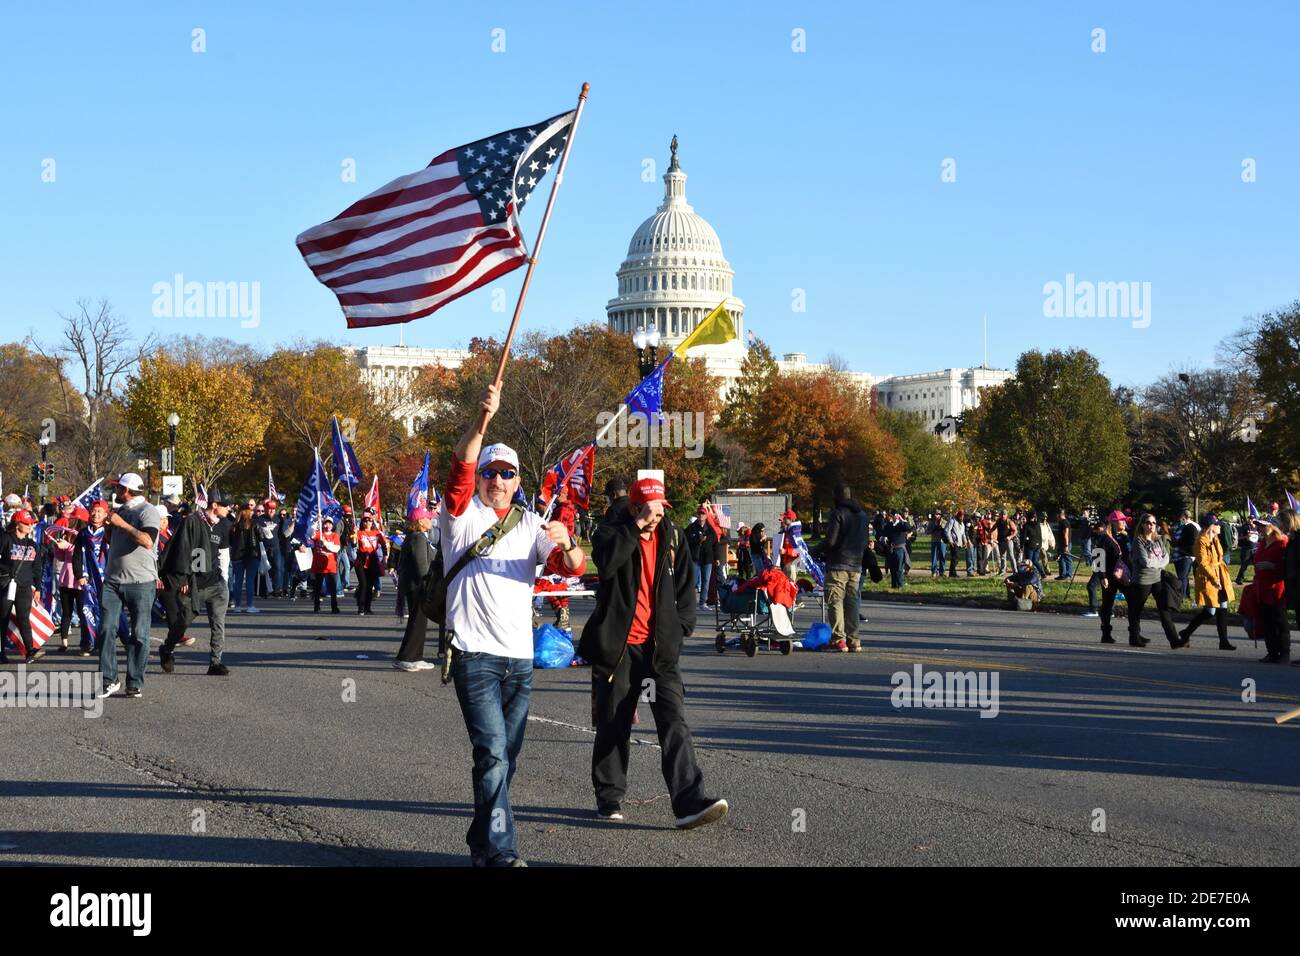 Washington DC, États-Unis. 14 novembre 2020. La marche de Mages. Les partisans du président Trump défilent dans la rue avec des drapeaux devant le Capitole des États-Unis. Banque D'Images